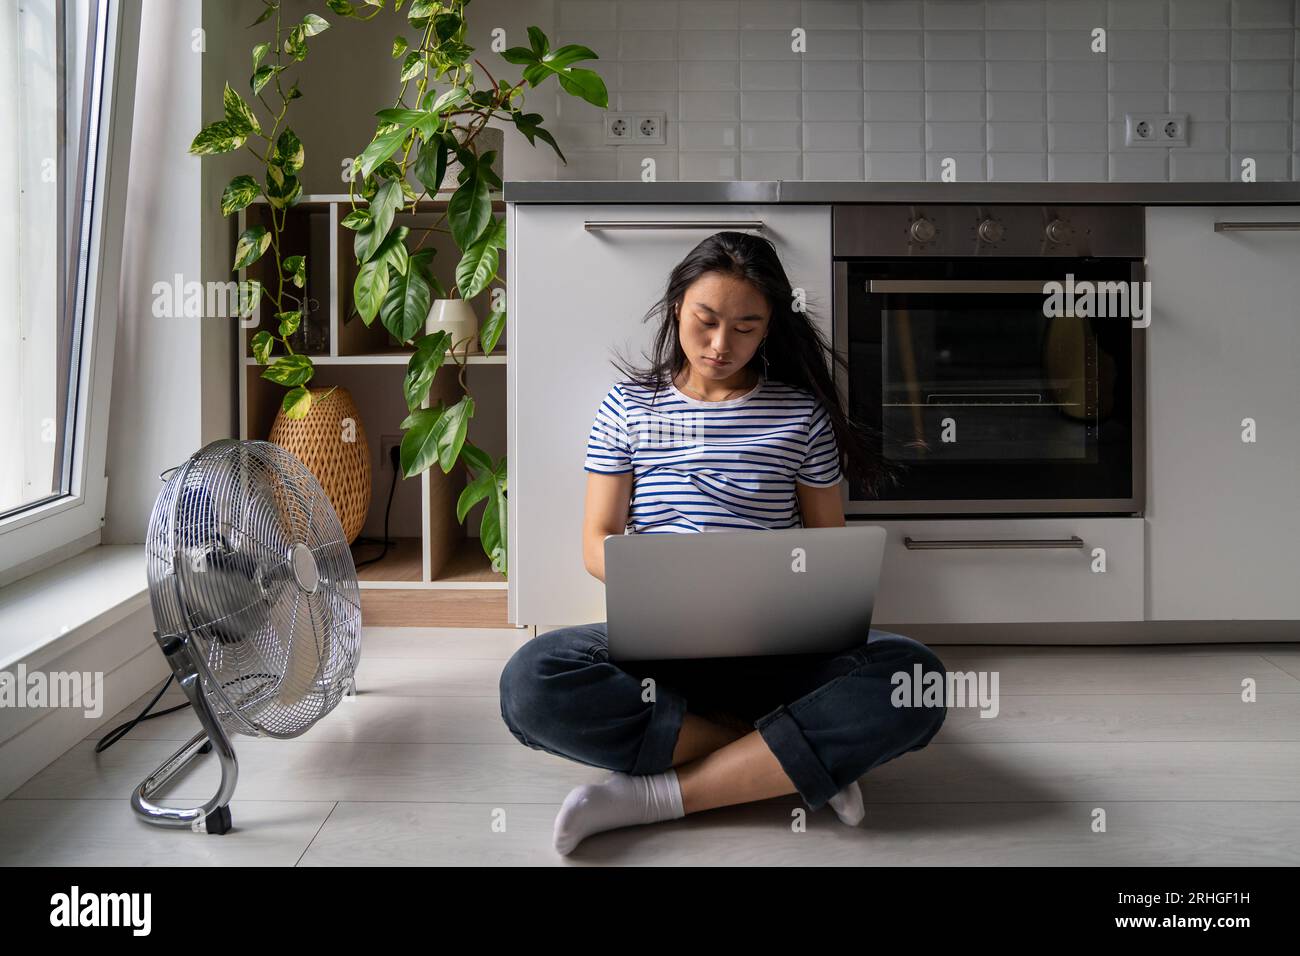 Beau jeune fille asiatique étudiante avec ordinateur portable languissant la chaleur assis sur le plancher frais à côté du ventilateur. Banque D'Images